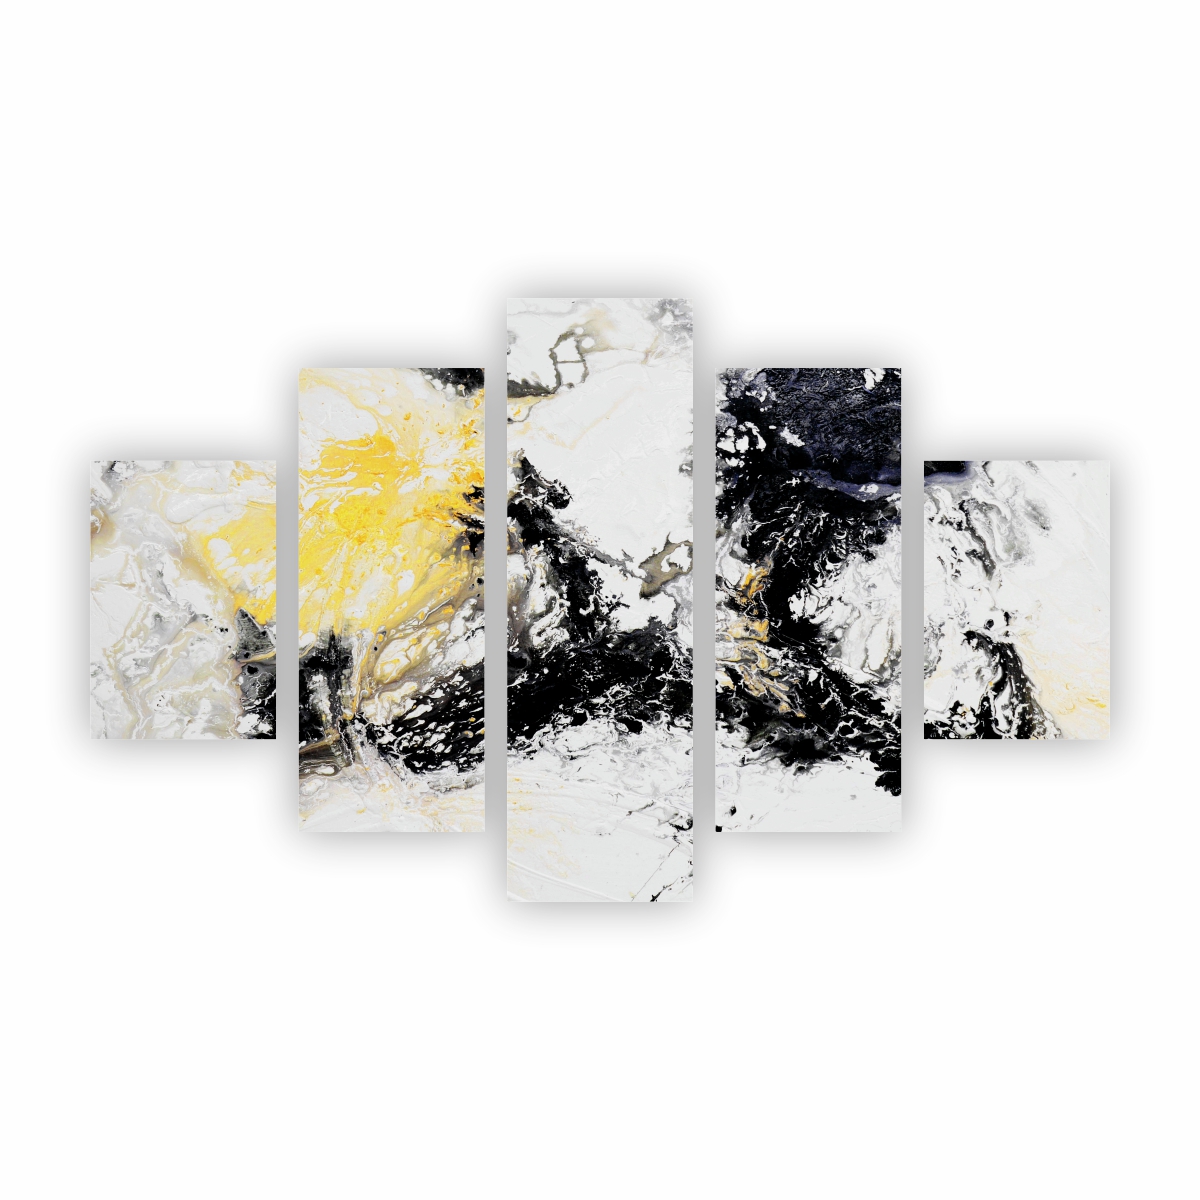 Quadro Abstrato Manchas Preto Branco e Amarelo Canvas